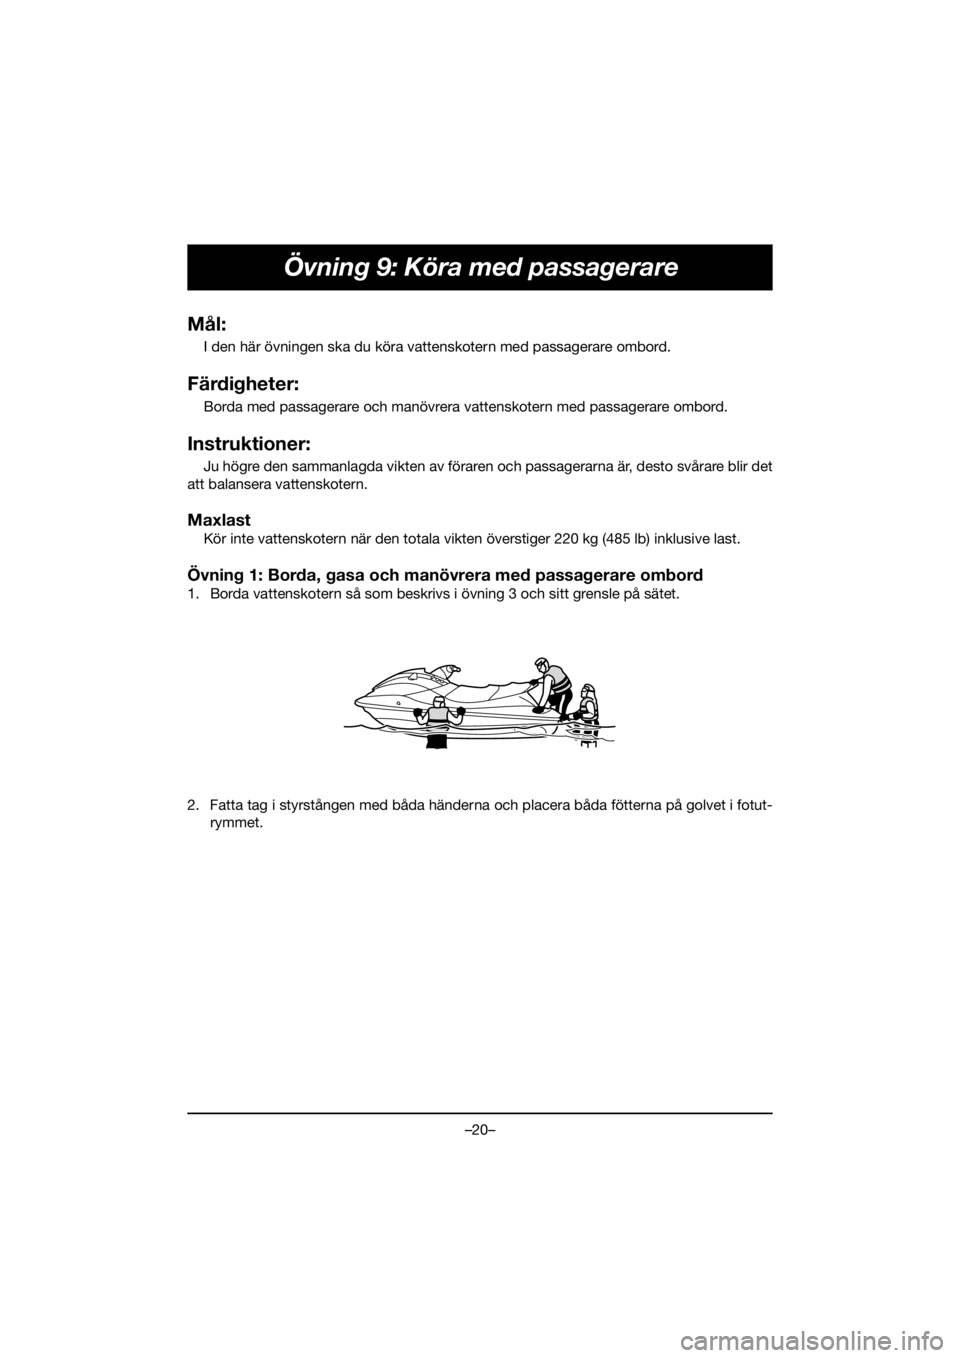 YAMAHA FJR1300 2019  ΟΔΗΓΌΣ ΧΡΉΣΗΣ (in Greek) –20–
Övning 9: Köra med passagerare
Mål:
I den här övningen ska du köra vattenskotern med passagerare ombord.
Färdigheter:
Borda med passagerare och manövrera vattenskotern med passagerare